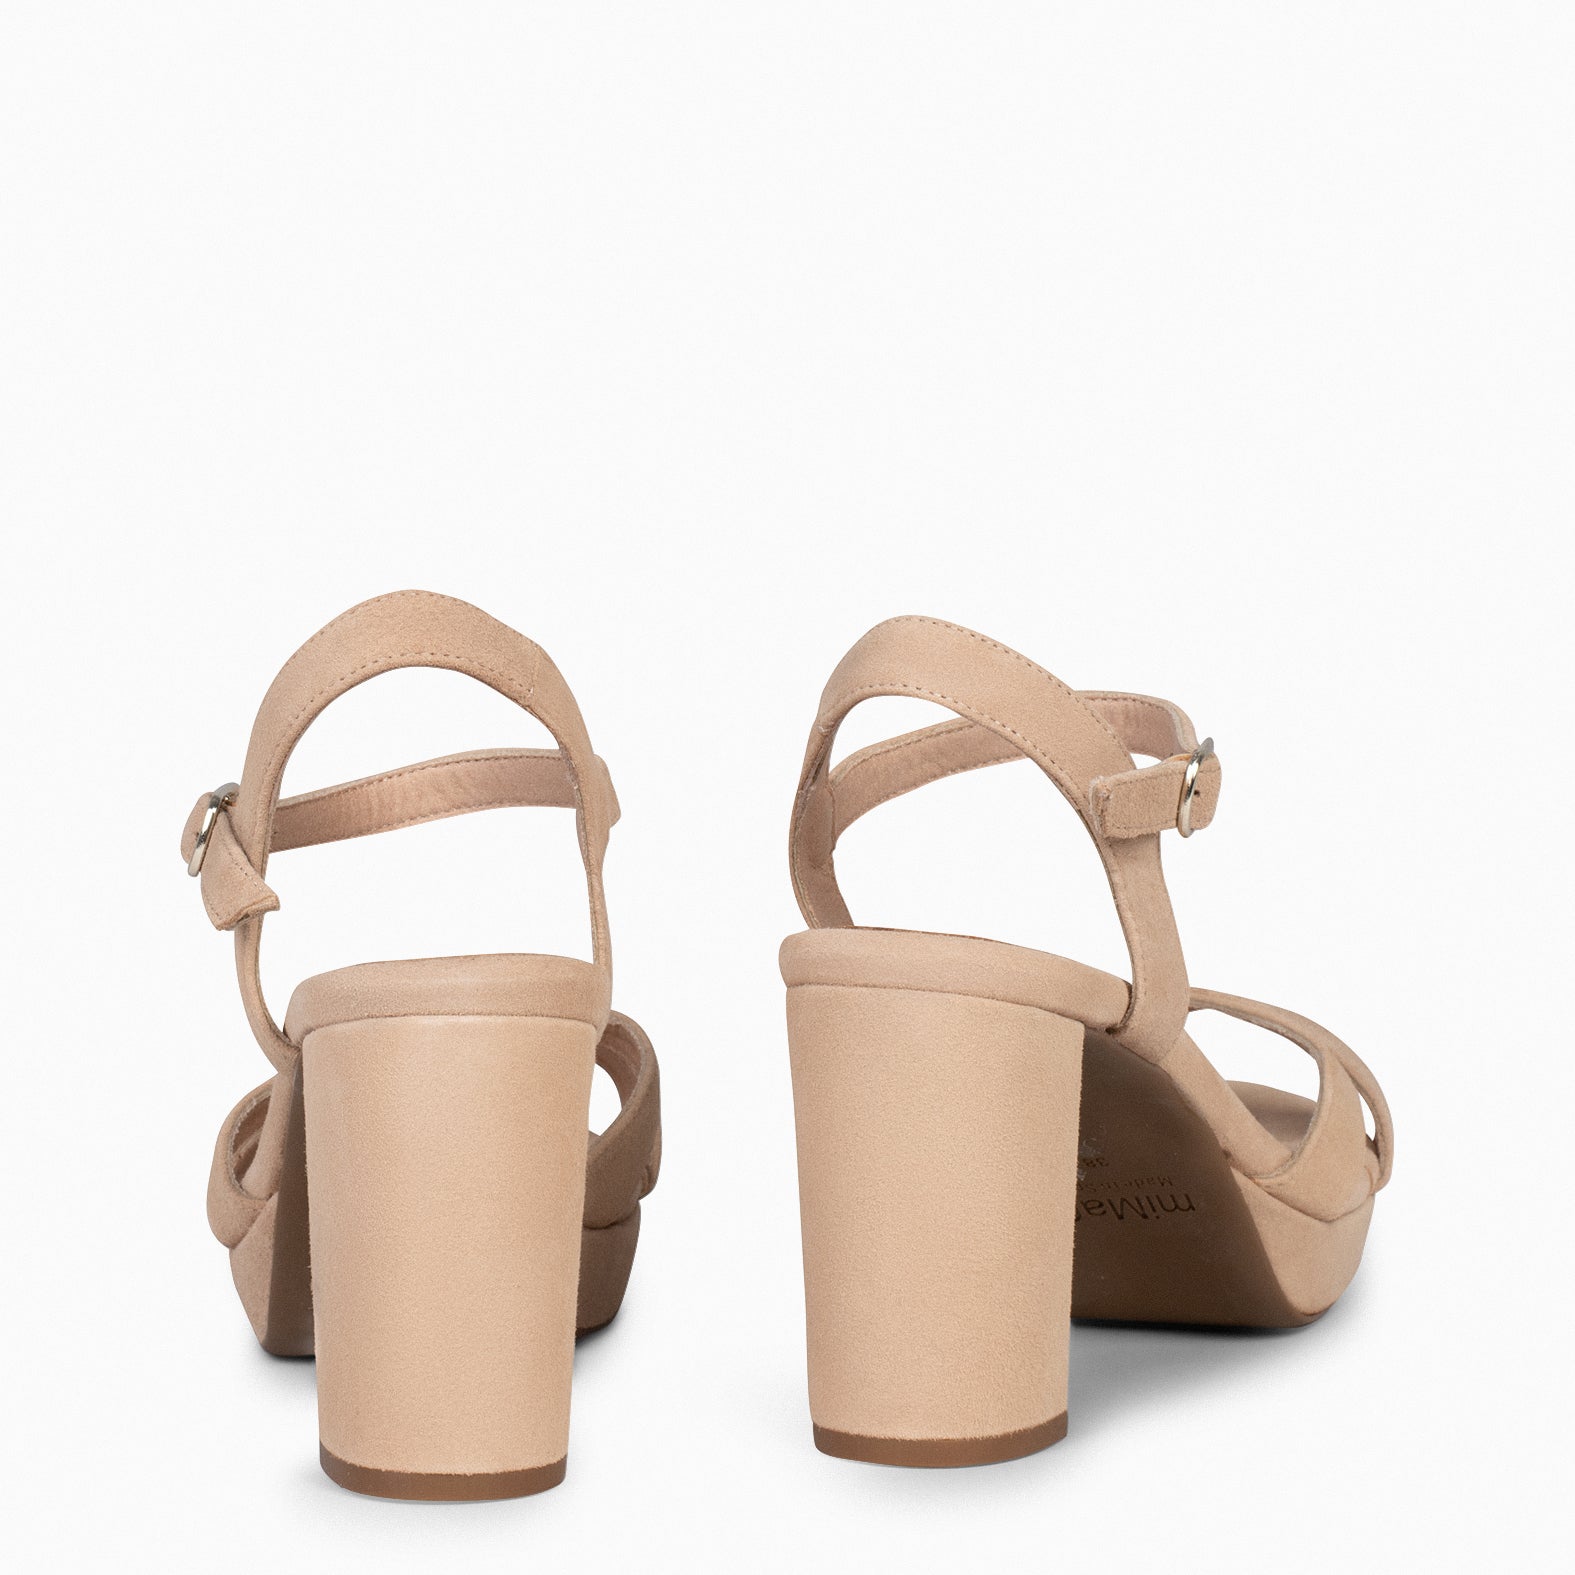 PARIS – TAN high heel sandal with platform